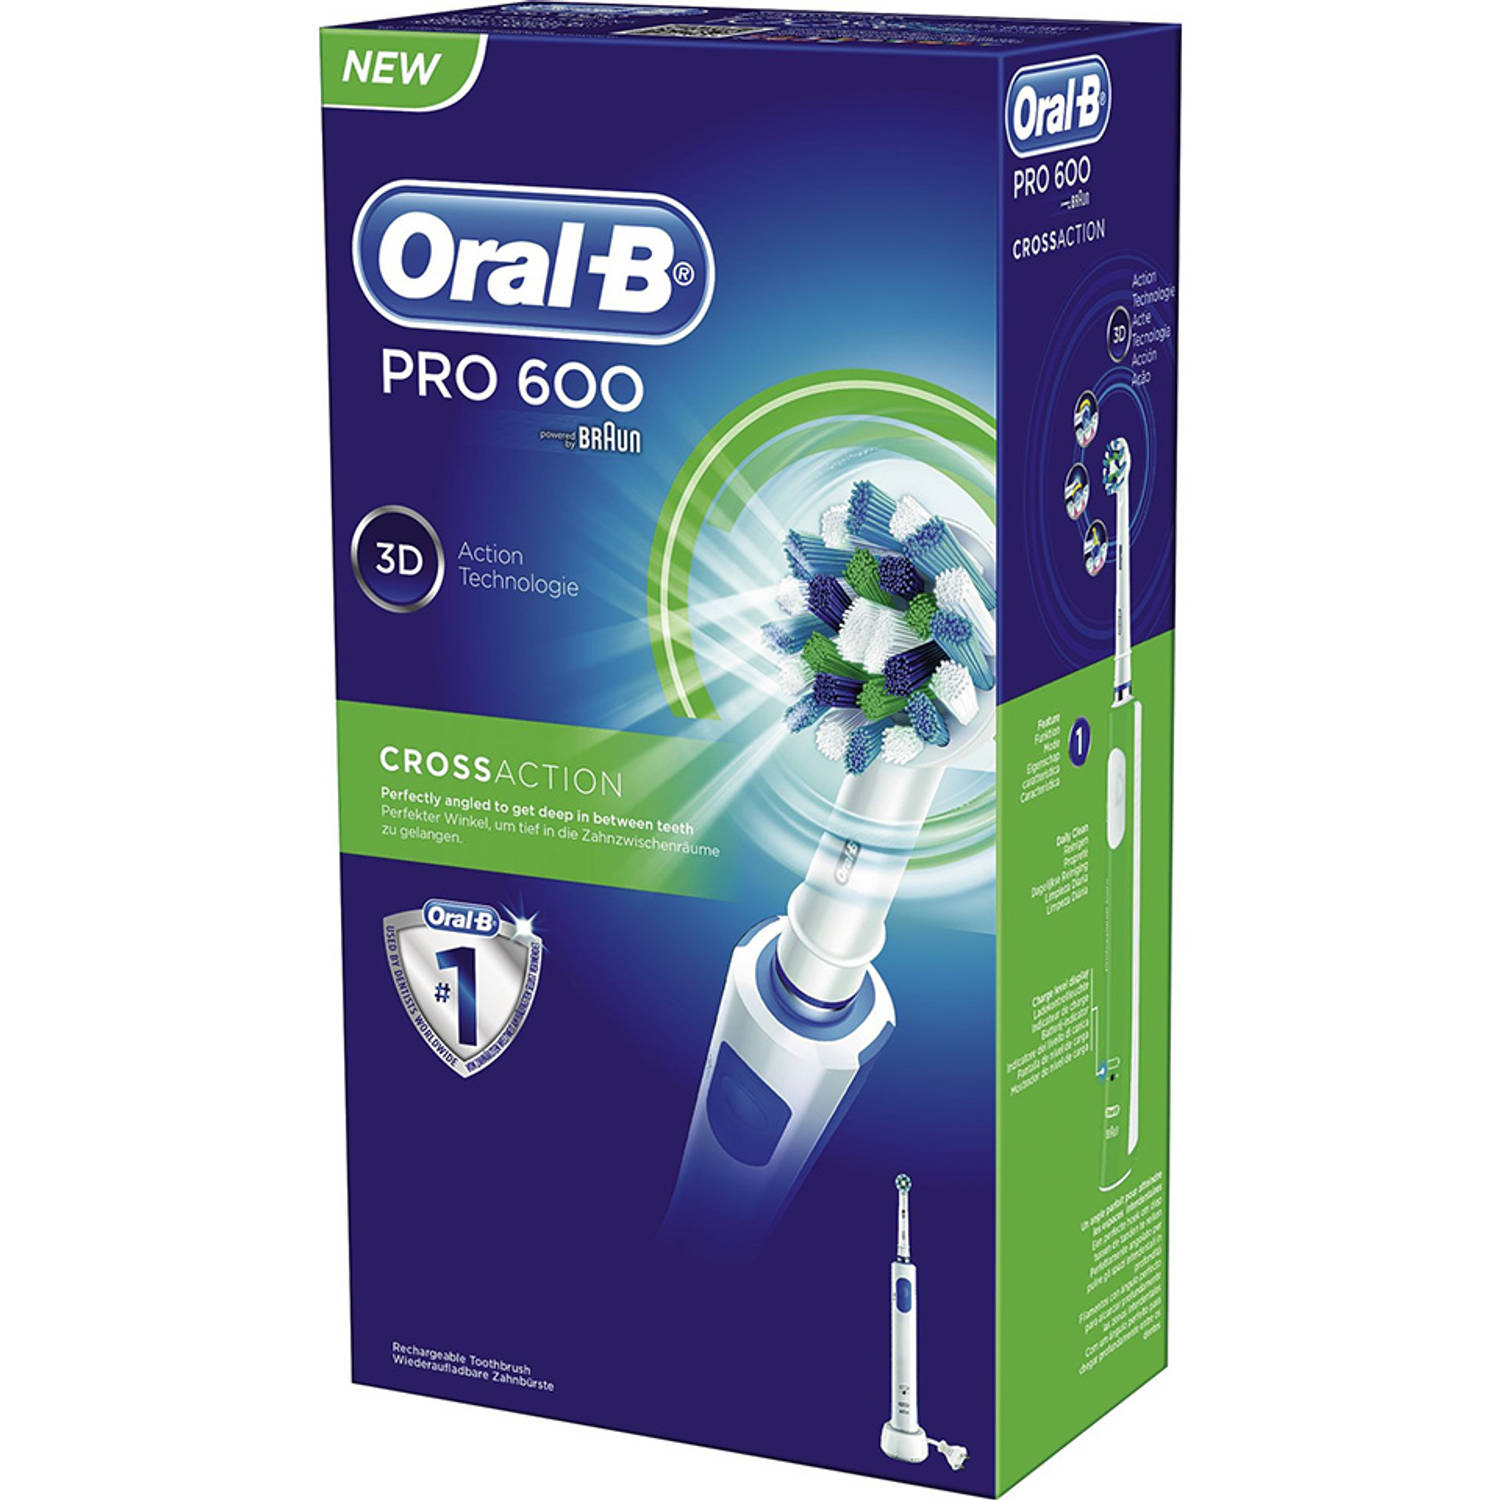 jury Vroeg Bewijzen Oral-B elektrische tandenborstel Pro 600 CrossAction | Blokker